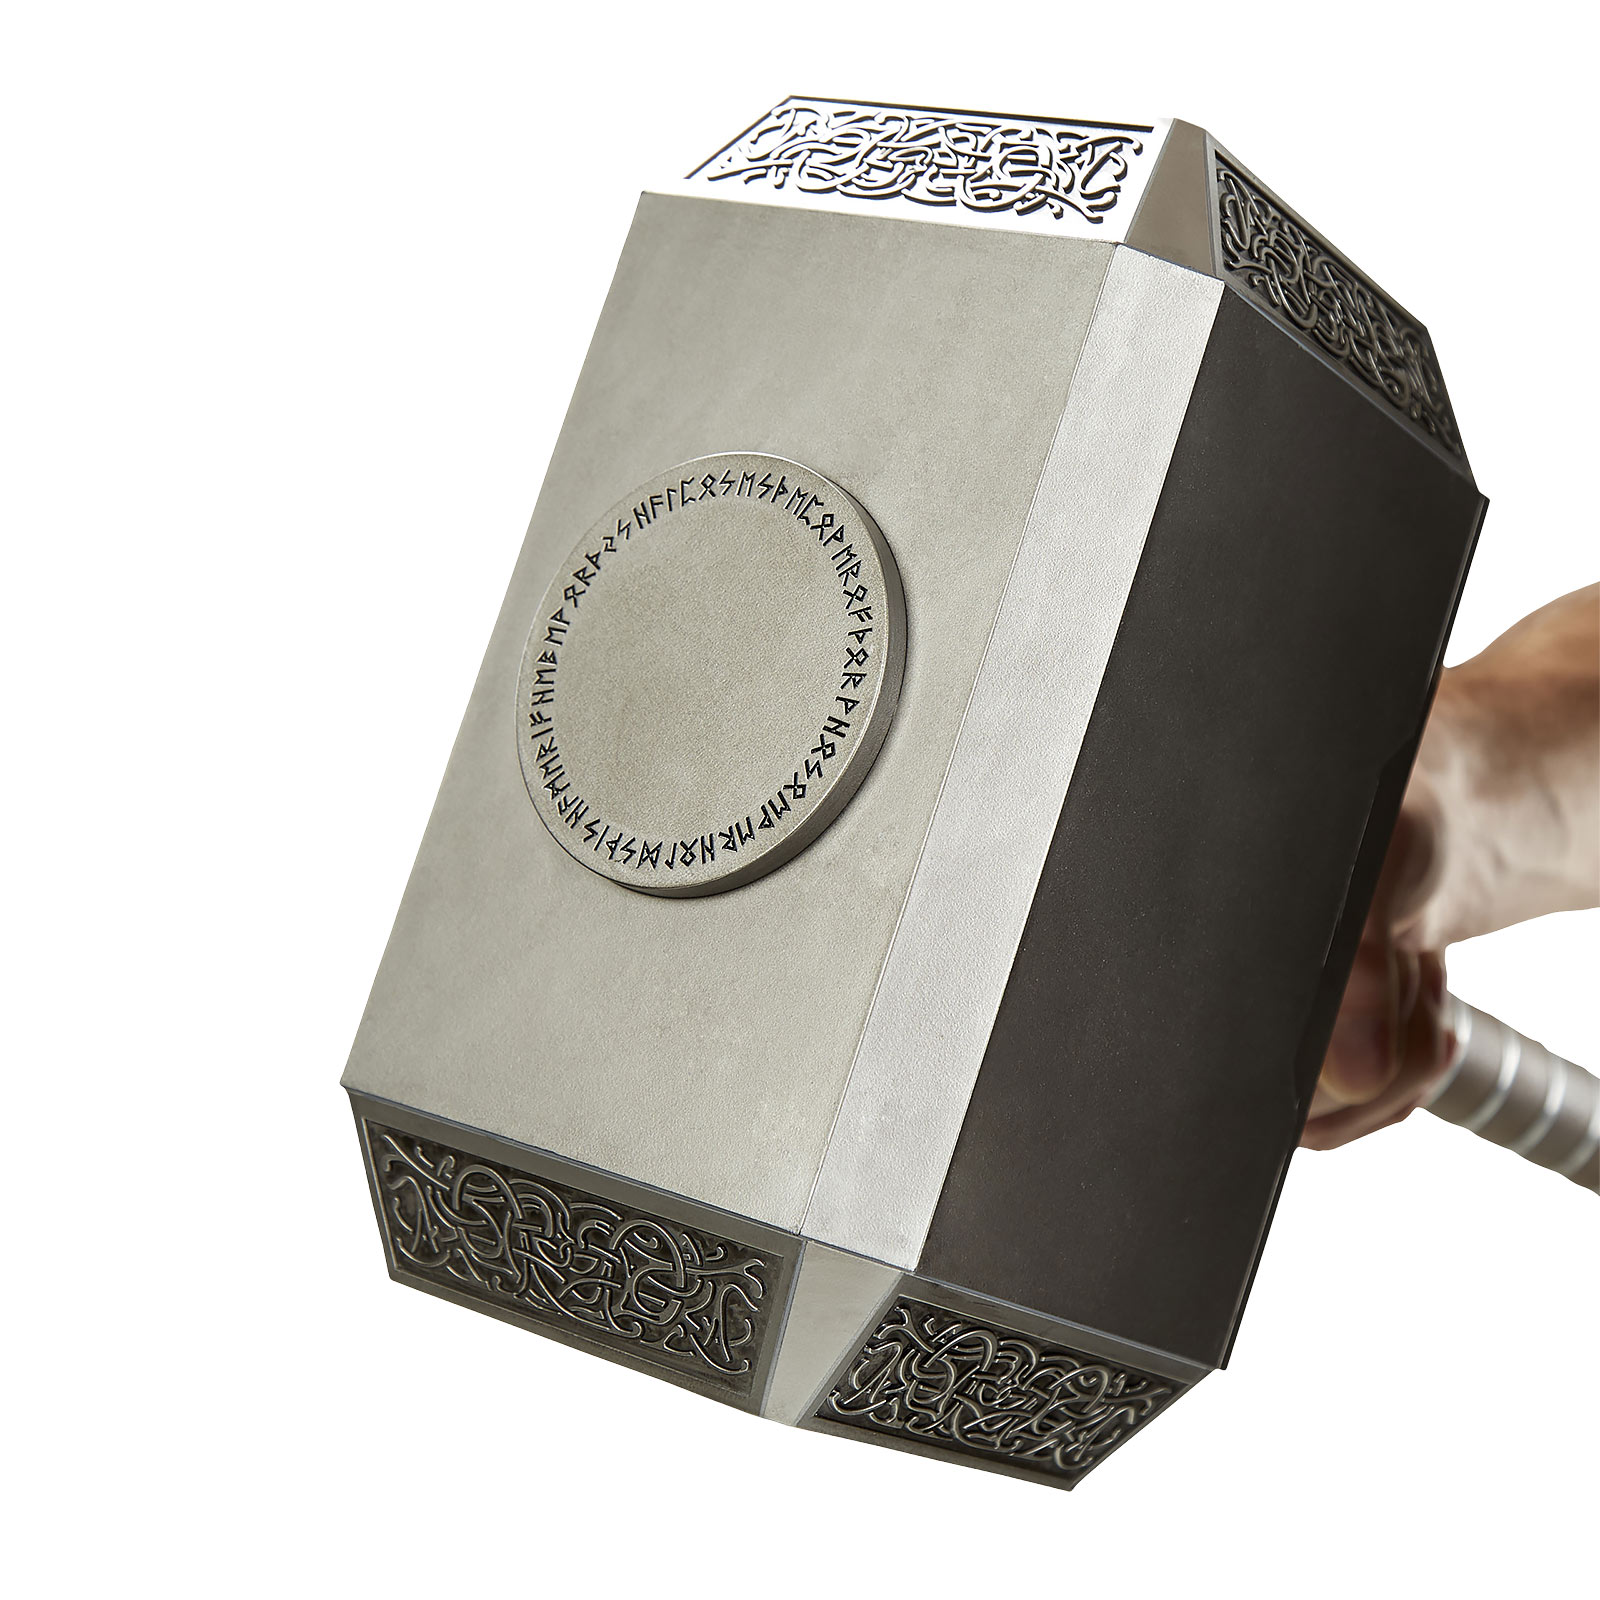 Thor - Hammer Mjölnir Replik mit Licht und Sound